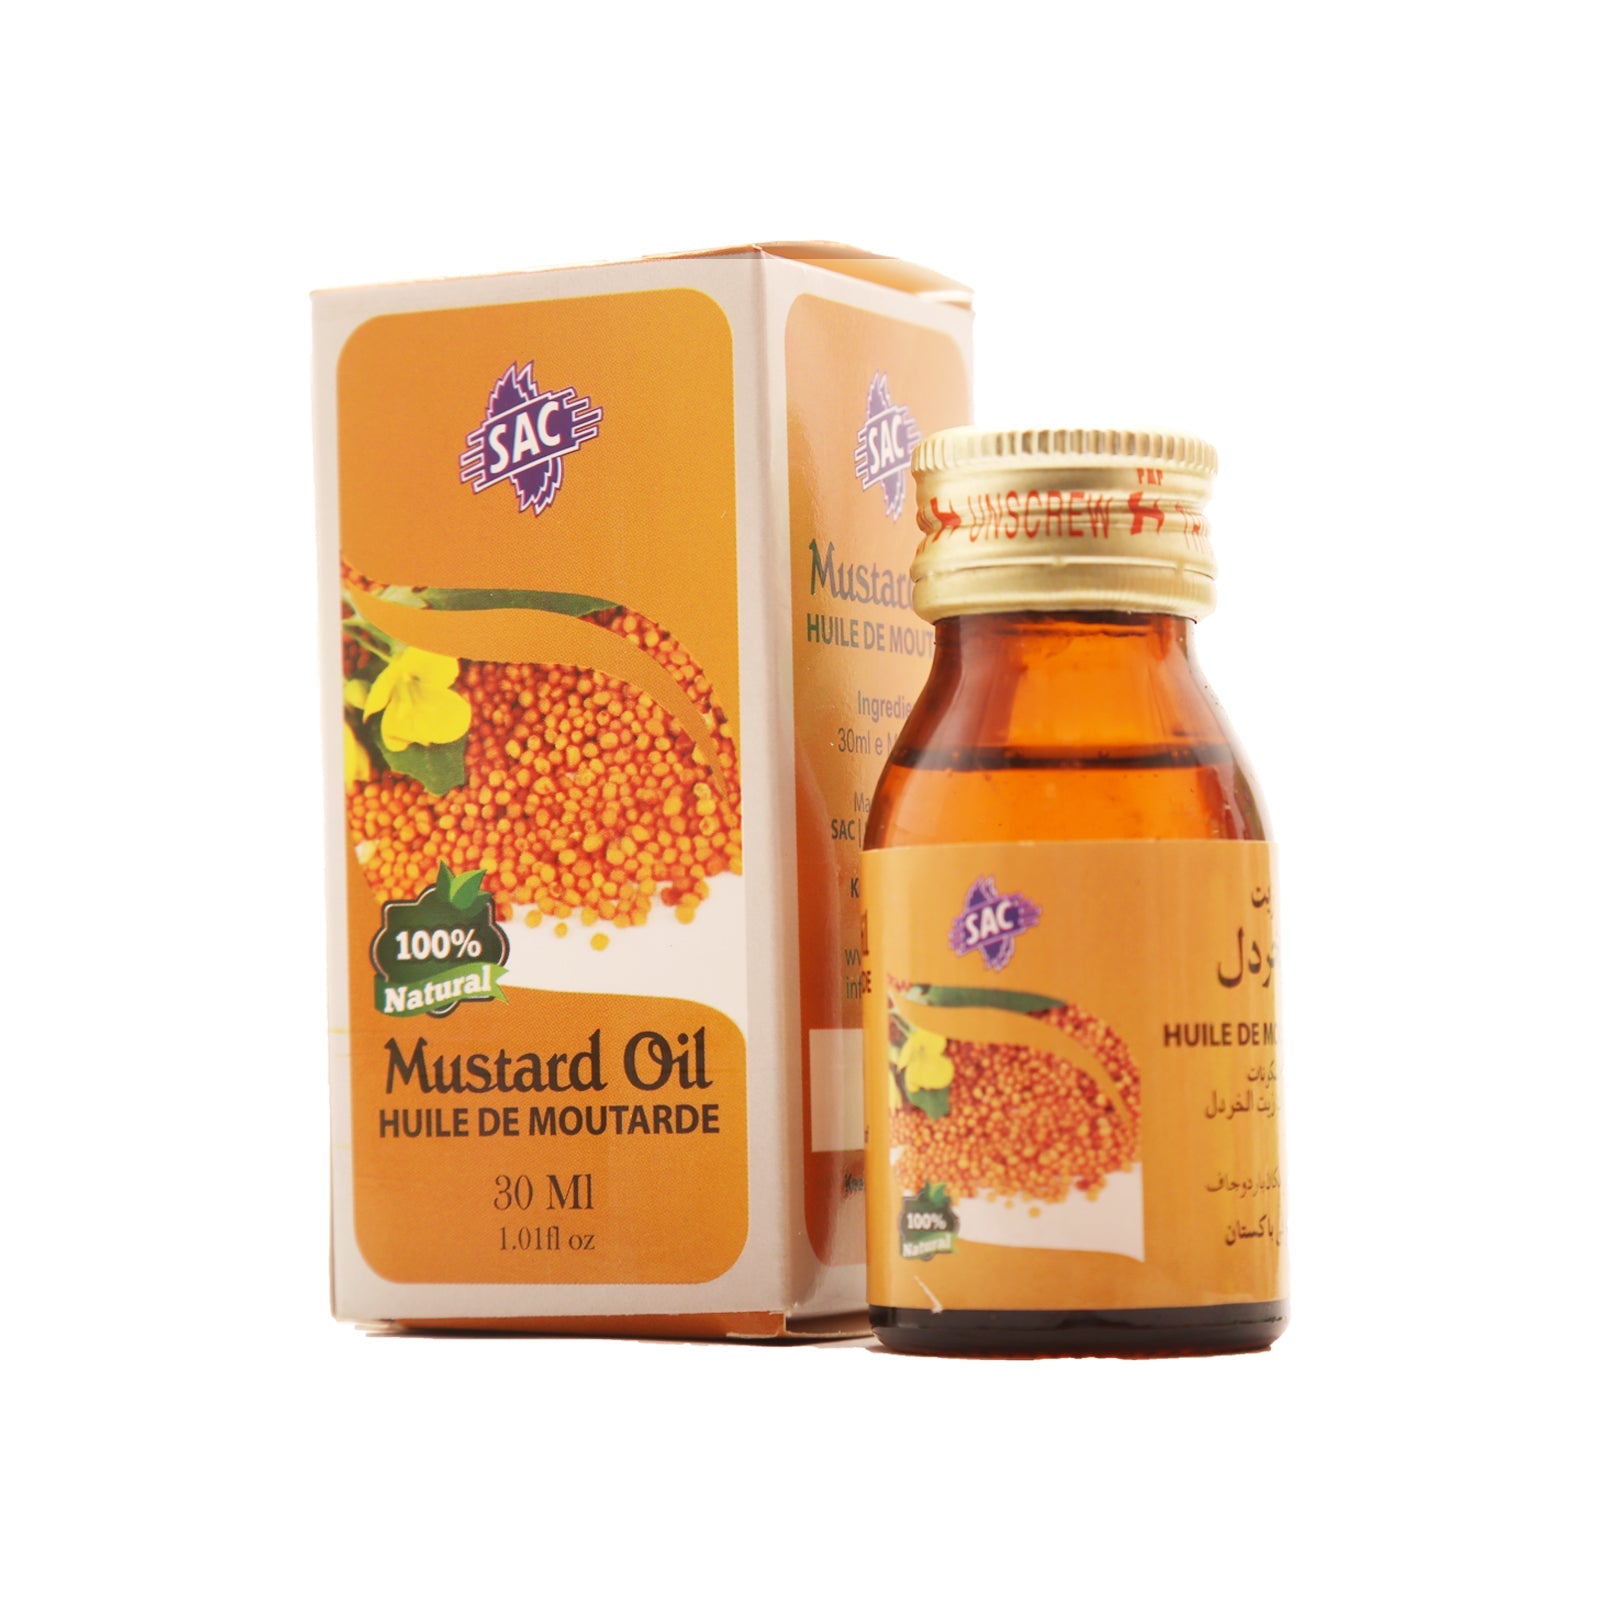 Mustard oil 30ml